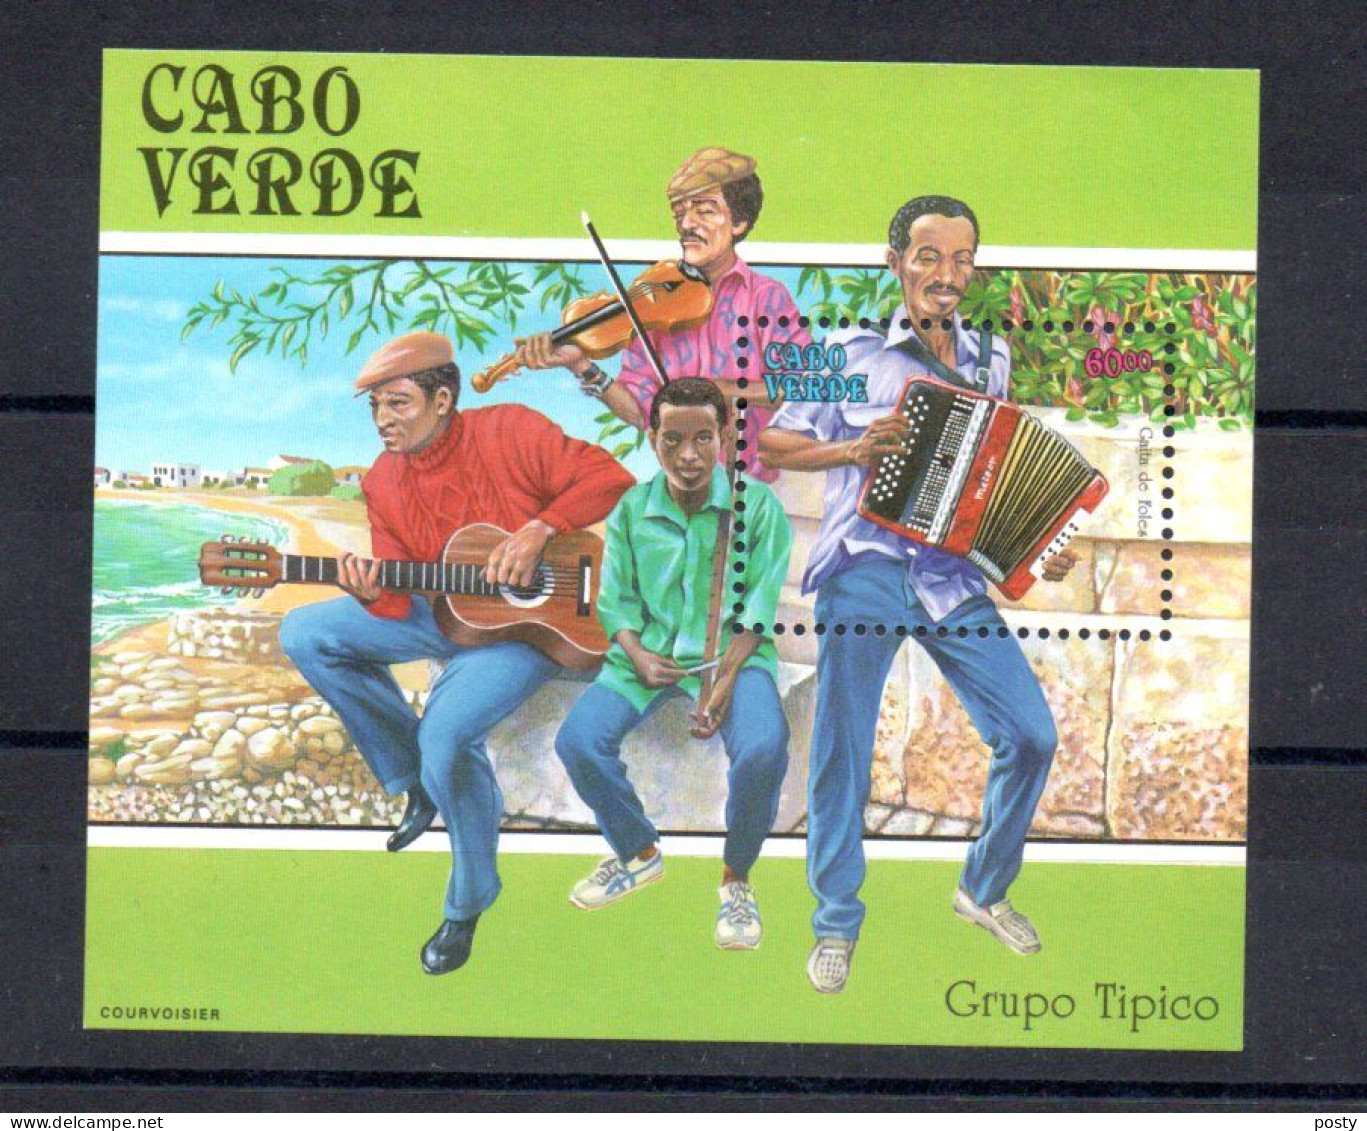 CAP VERT - CABO VERDE - CAPE VERDE - M/S - B/F - 1991 - GROUPE TYPIQUE - TRADITIONAL GROUP - MUSIQUE - MUSIC - - Cape Verde